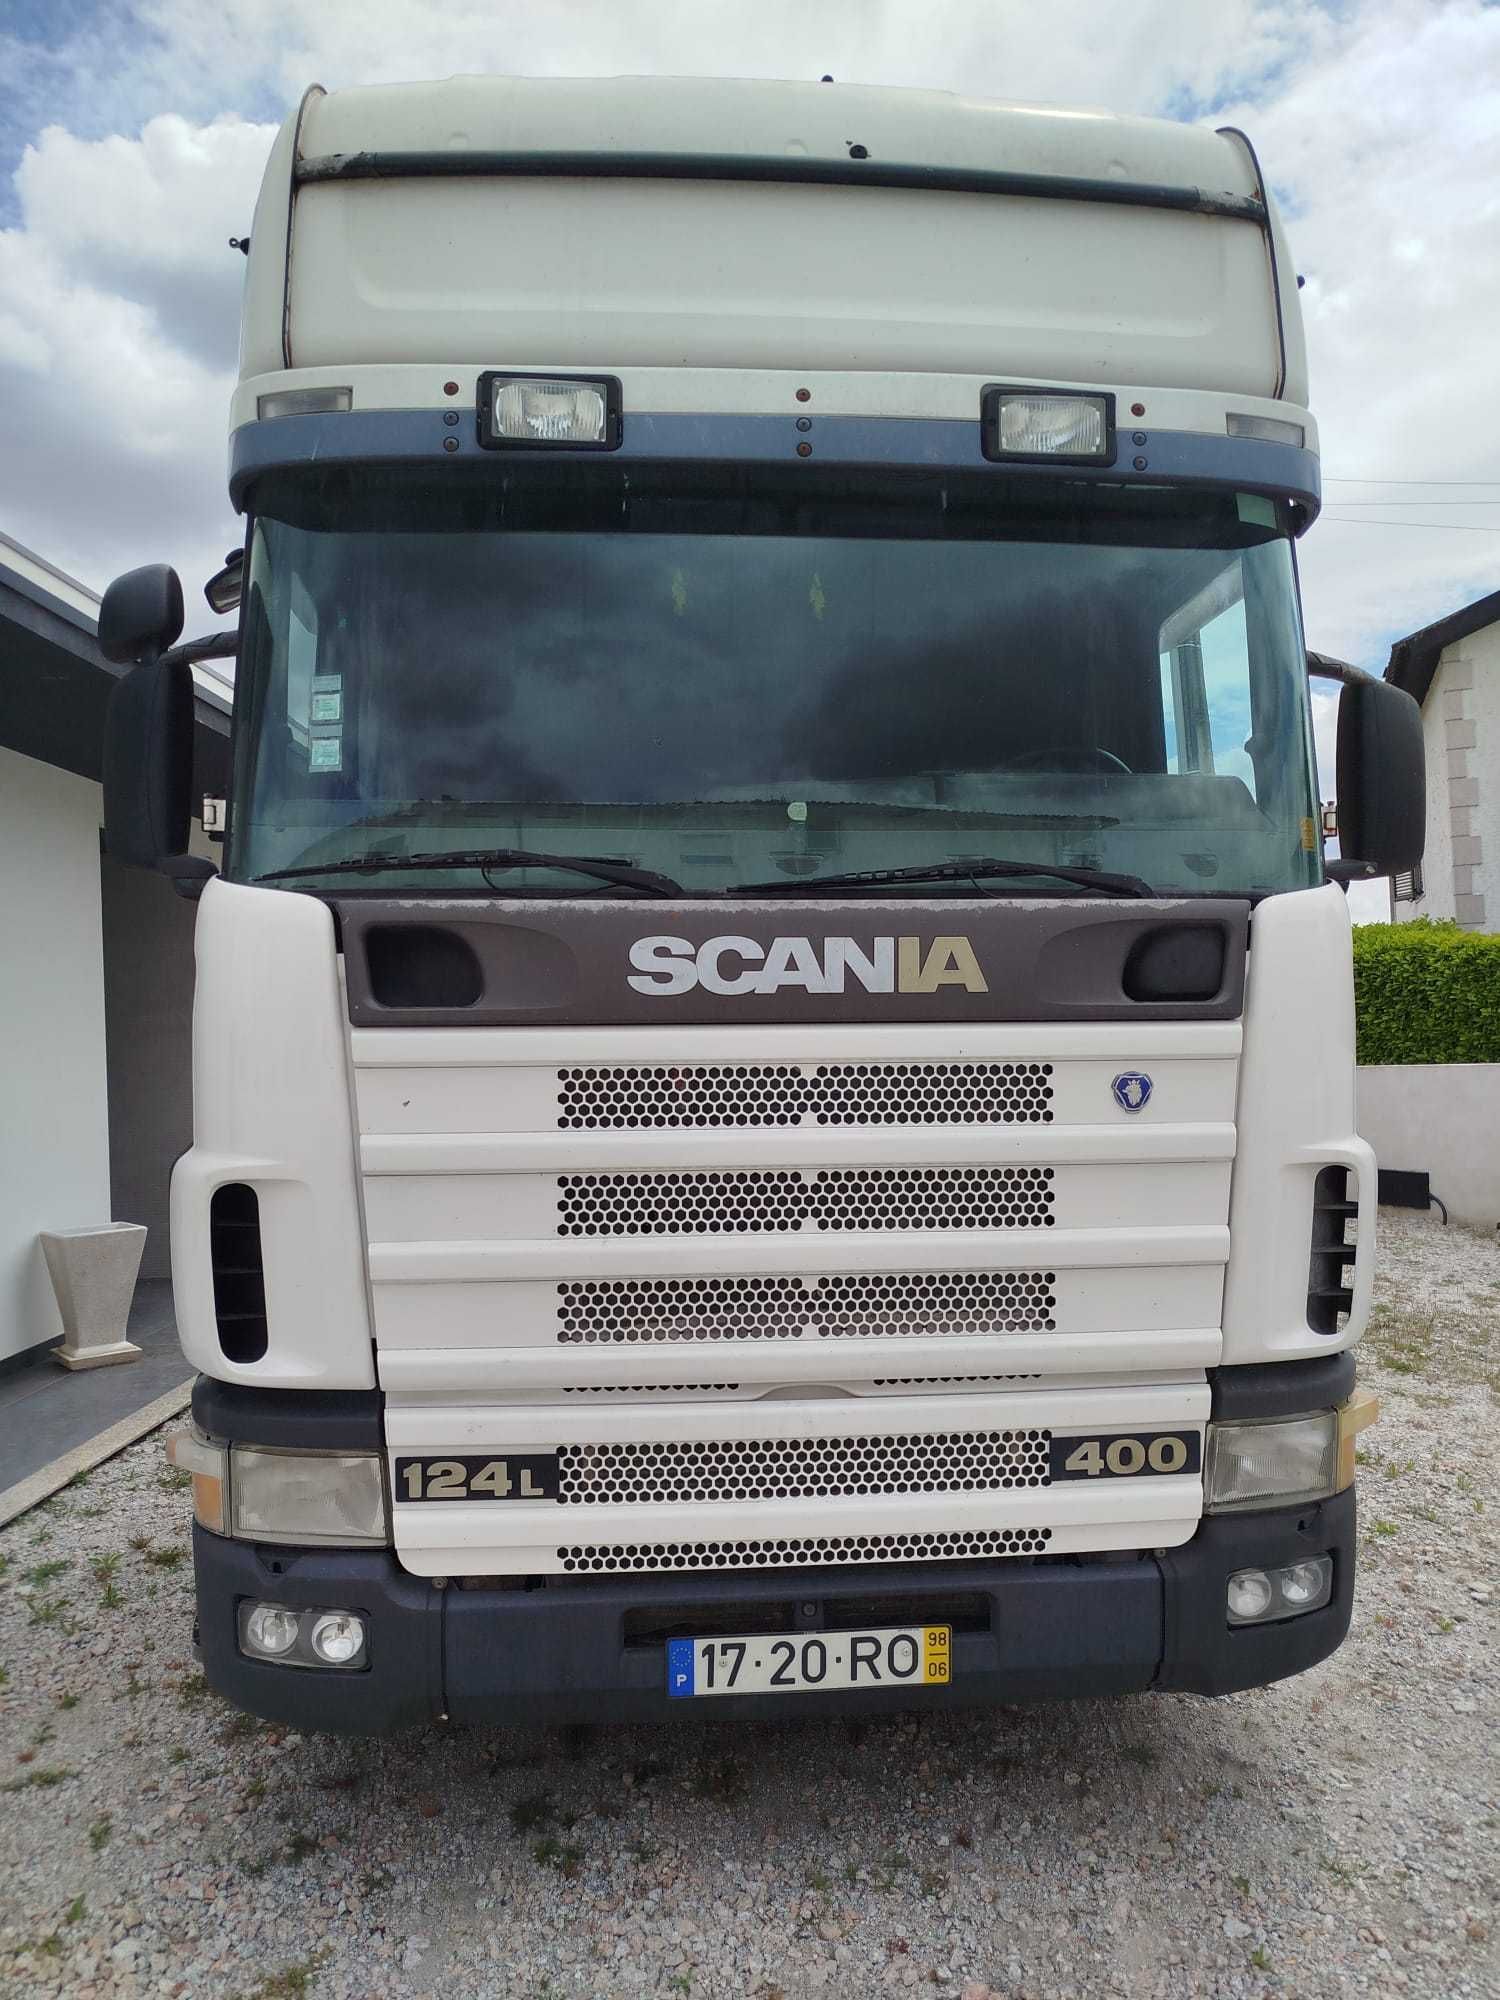 Vendo Scania usada